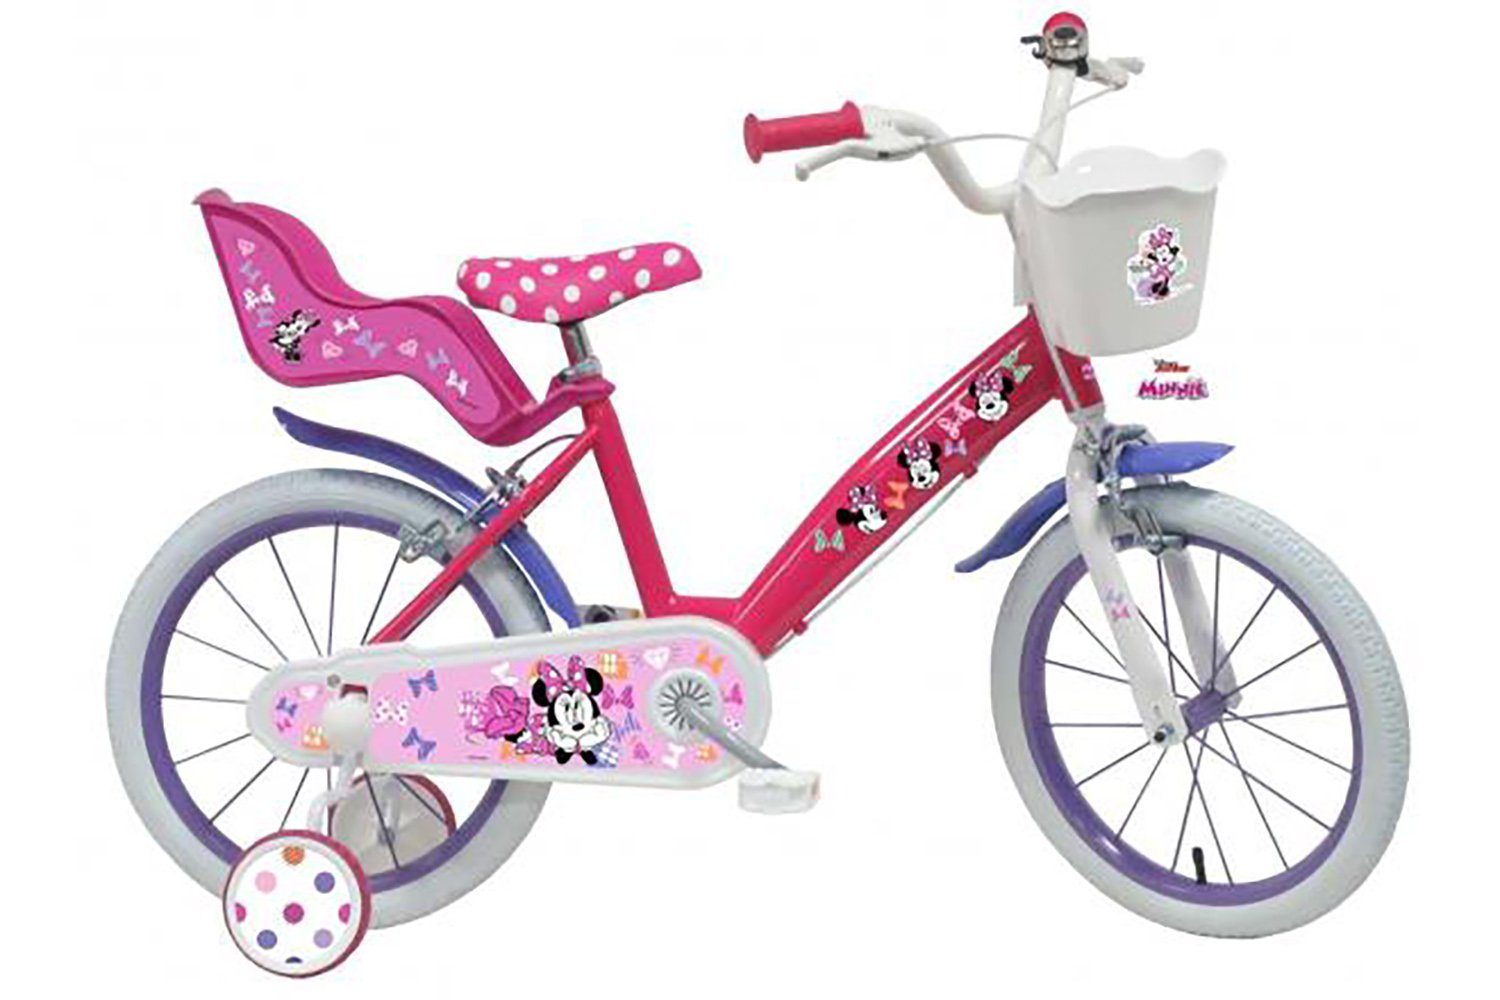 TPFSports Kinderfahrrad Disney Minnie Cutest Ever 16 Zoll mit 2 Handbremsen, 1 Gang, (Mädchen Fahrrad - Rutschfeste Sicherheitsgriffe), Kinder Fahrrad 16 Zoll mit Stützräder Laufrad Mädchen Kinderrad